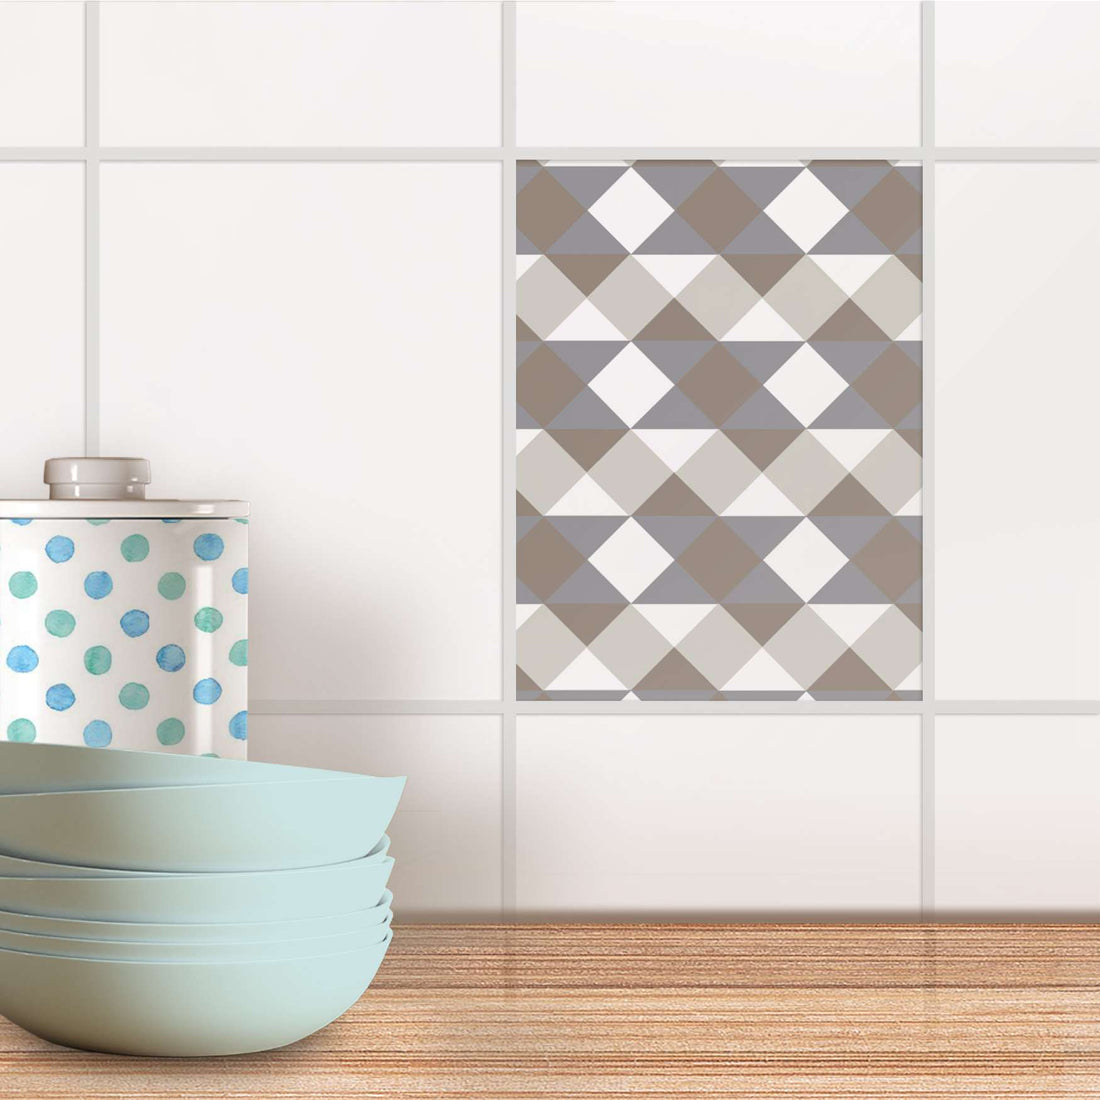 Fliesensticker Küche - Triangle Pattern - Grau